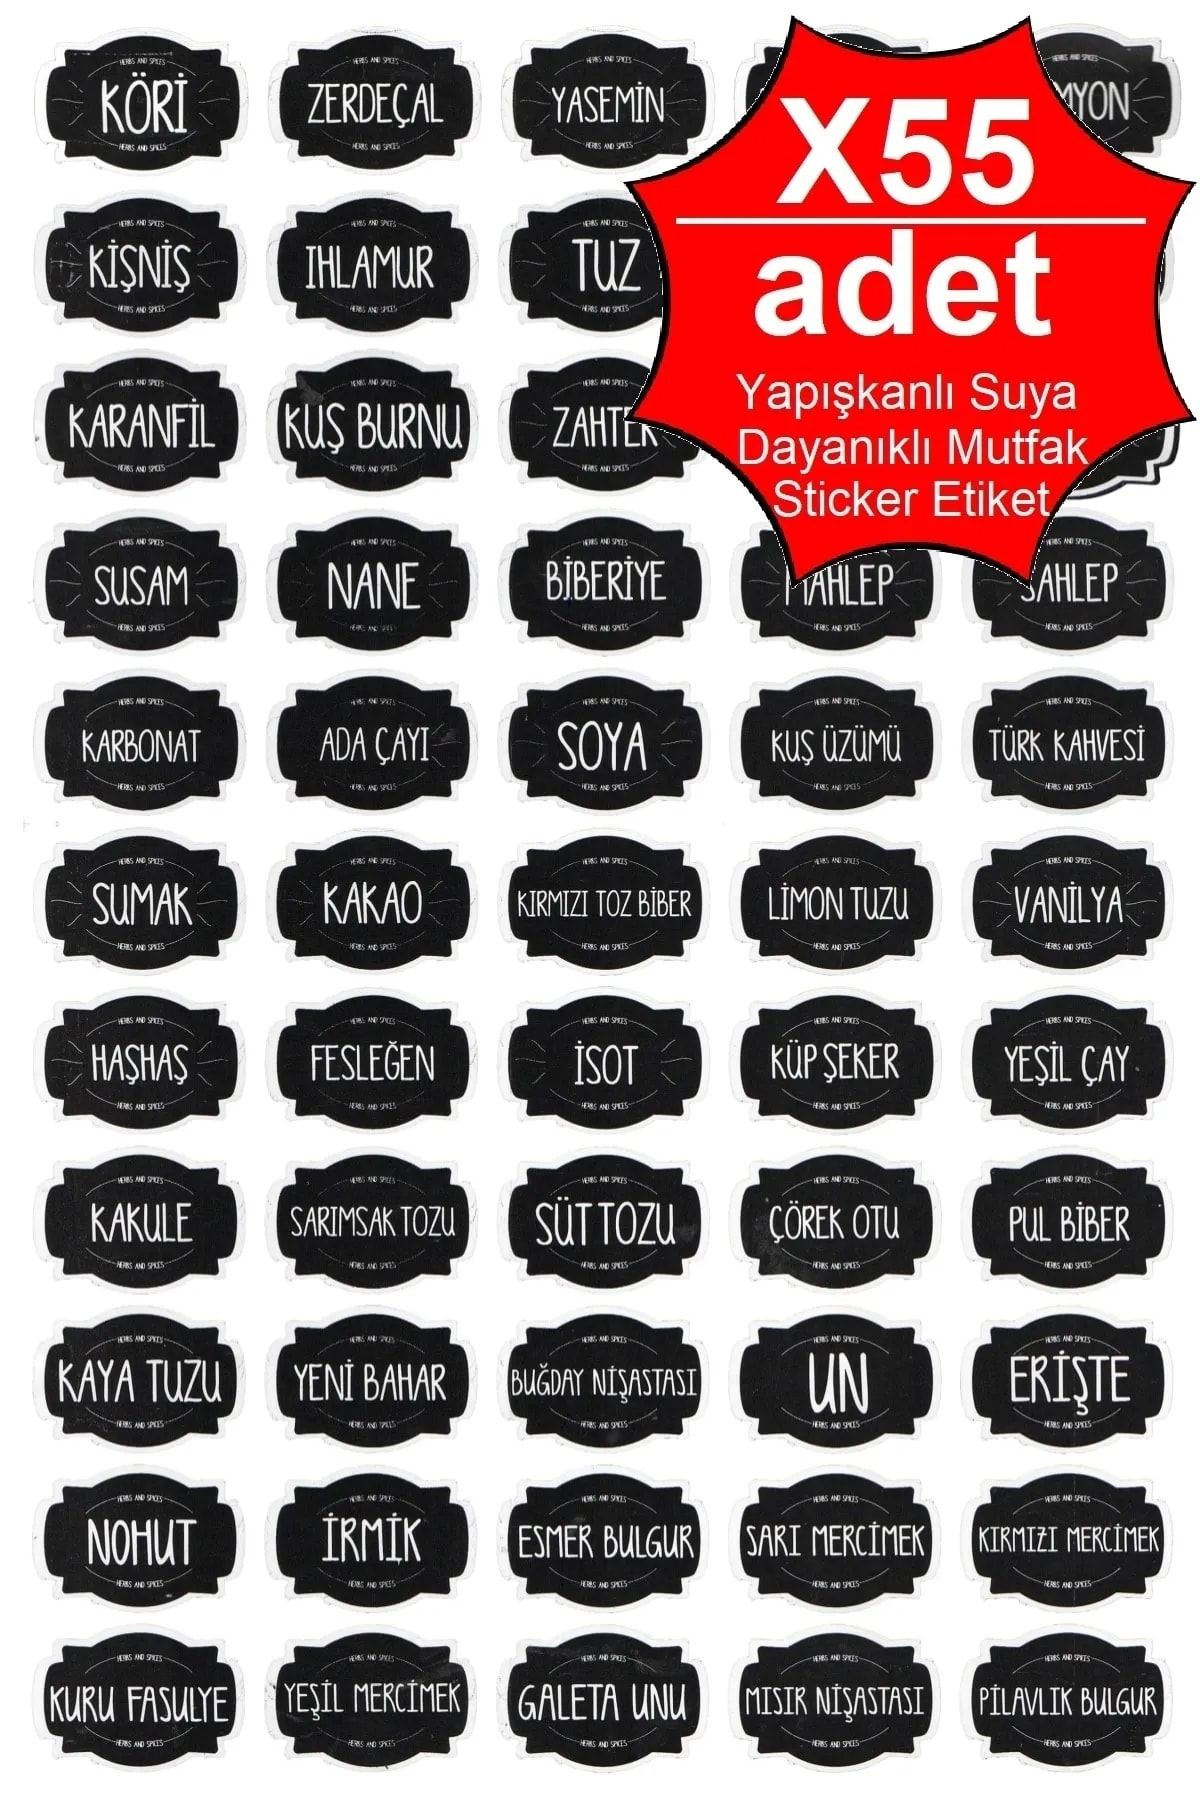 Trouvaille Mutfak Baharatlık Bakliyat Kavanoz Etiketi Yapışkanlı Selefonlu Suya Dayanıklı 55 Li Sticker Etiket